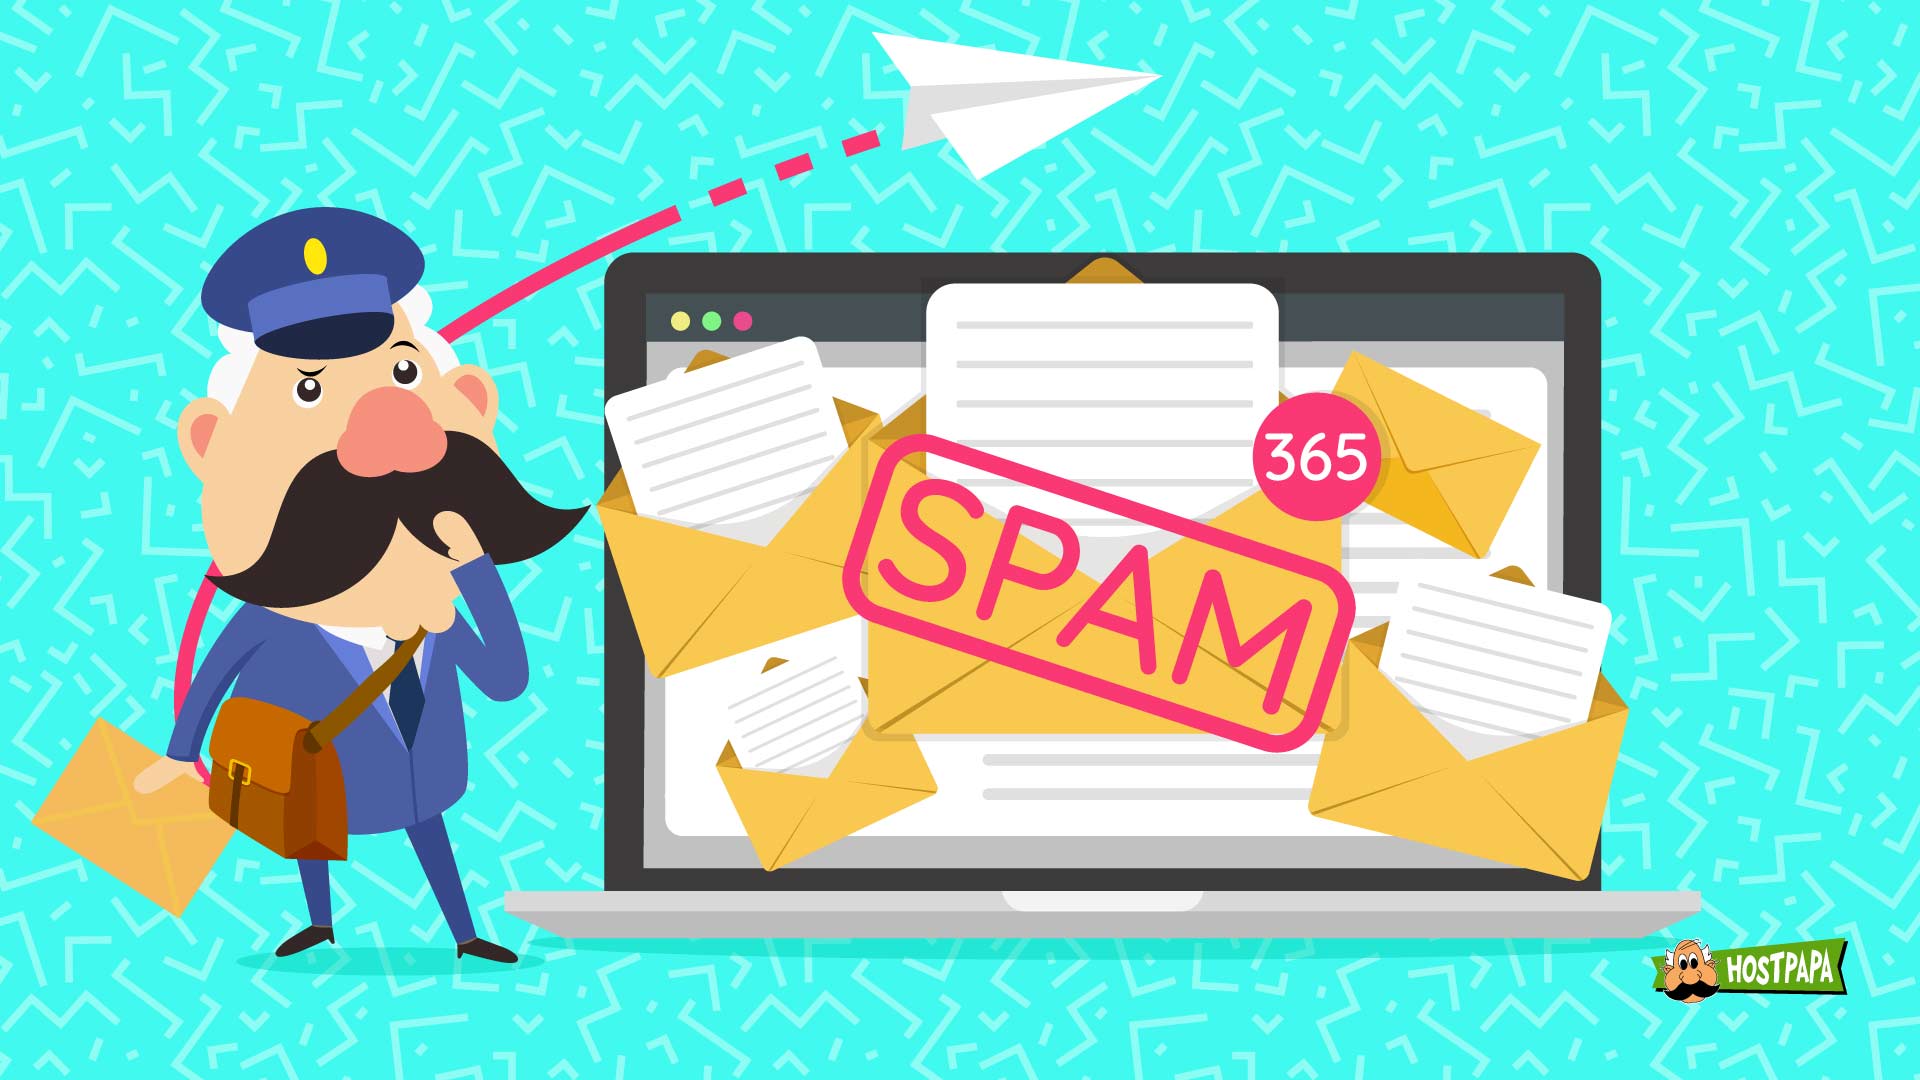 Come evitare di finire in spam, come non finire nello spam , filtri antispam , newsletter spam email , newsletter wordpress